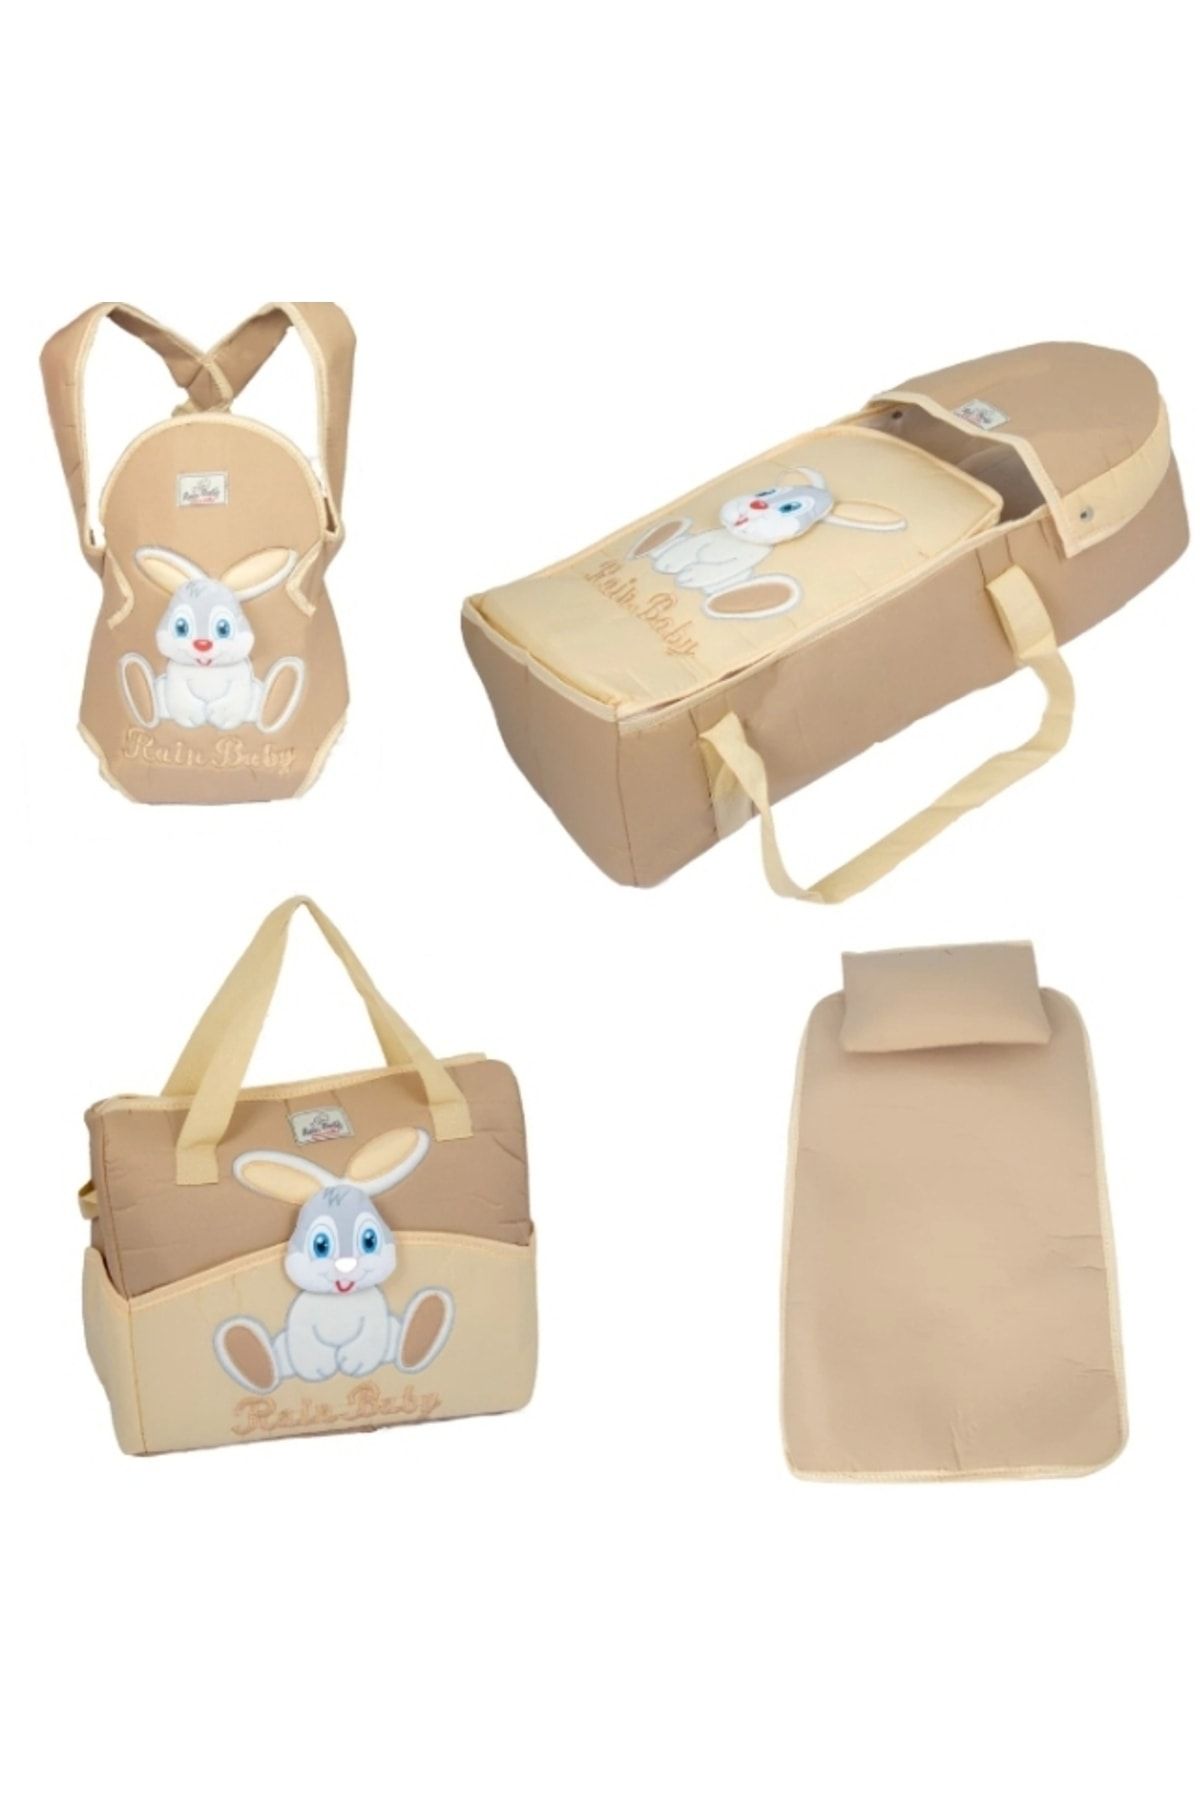 ŞAMATA PARTİ EVİ Bebek Taşıma Seti 5 Parça Renk Seçenekli Fiyat Avantajlı Tavşan Temalı Gold